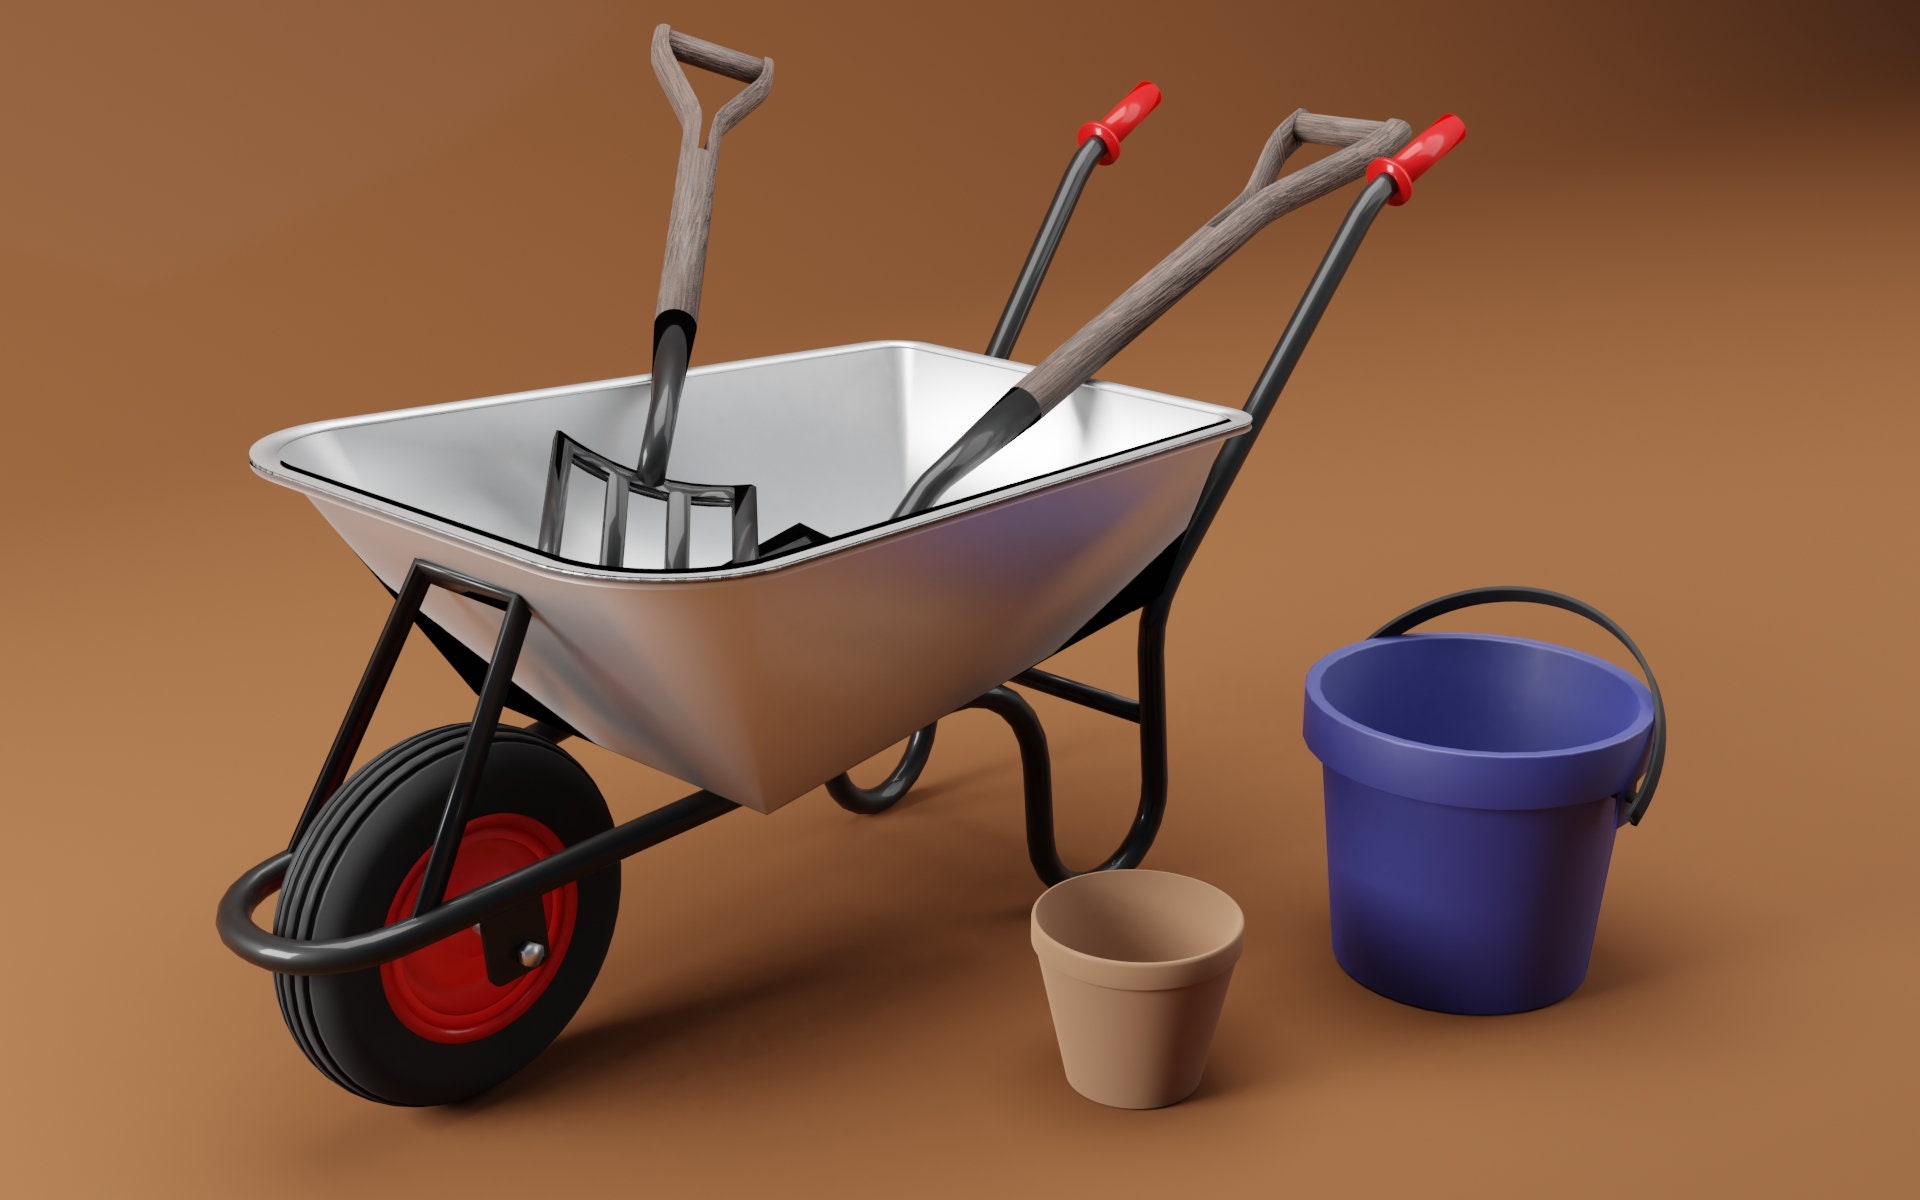 Blender Model of Wheelbarrow and Garden Tools blend File - Etsy Denmark